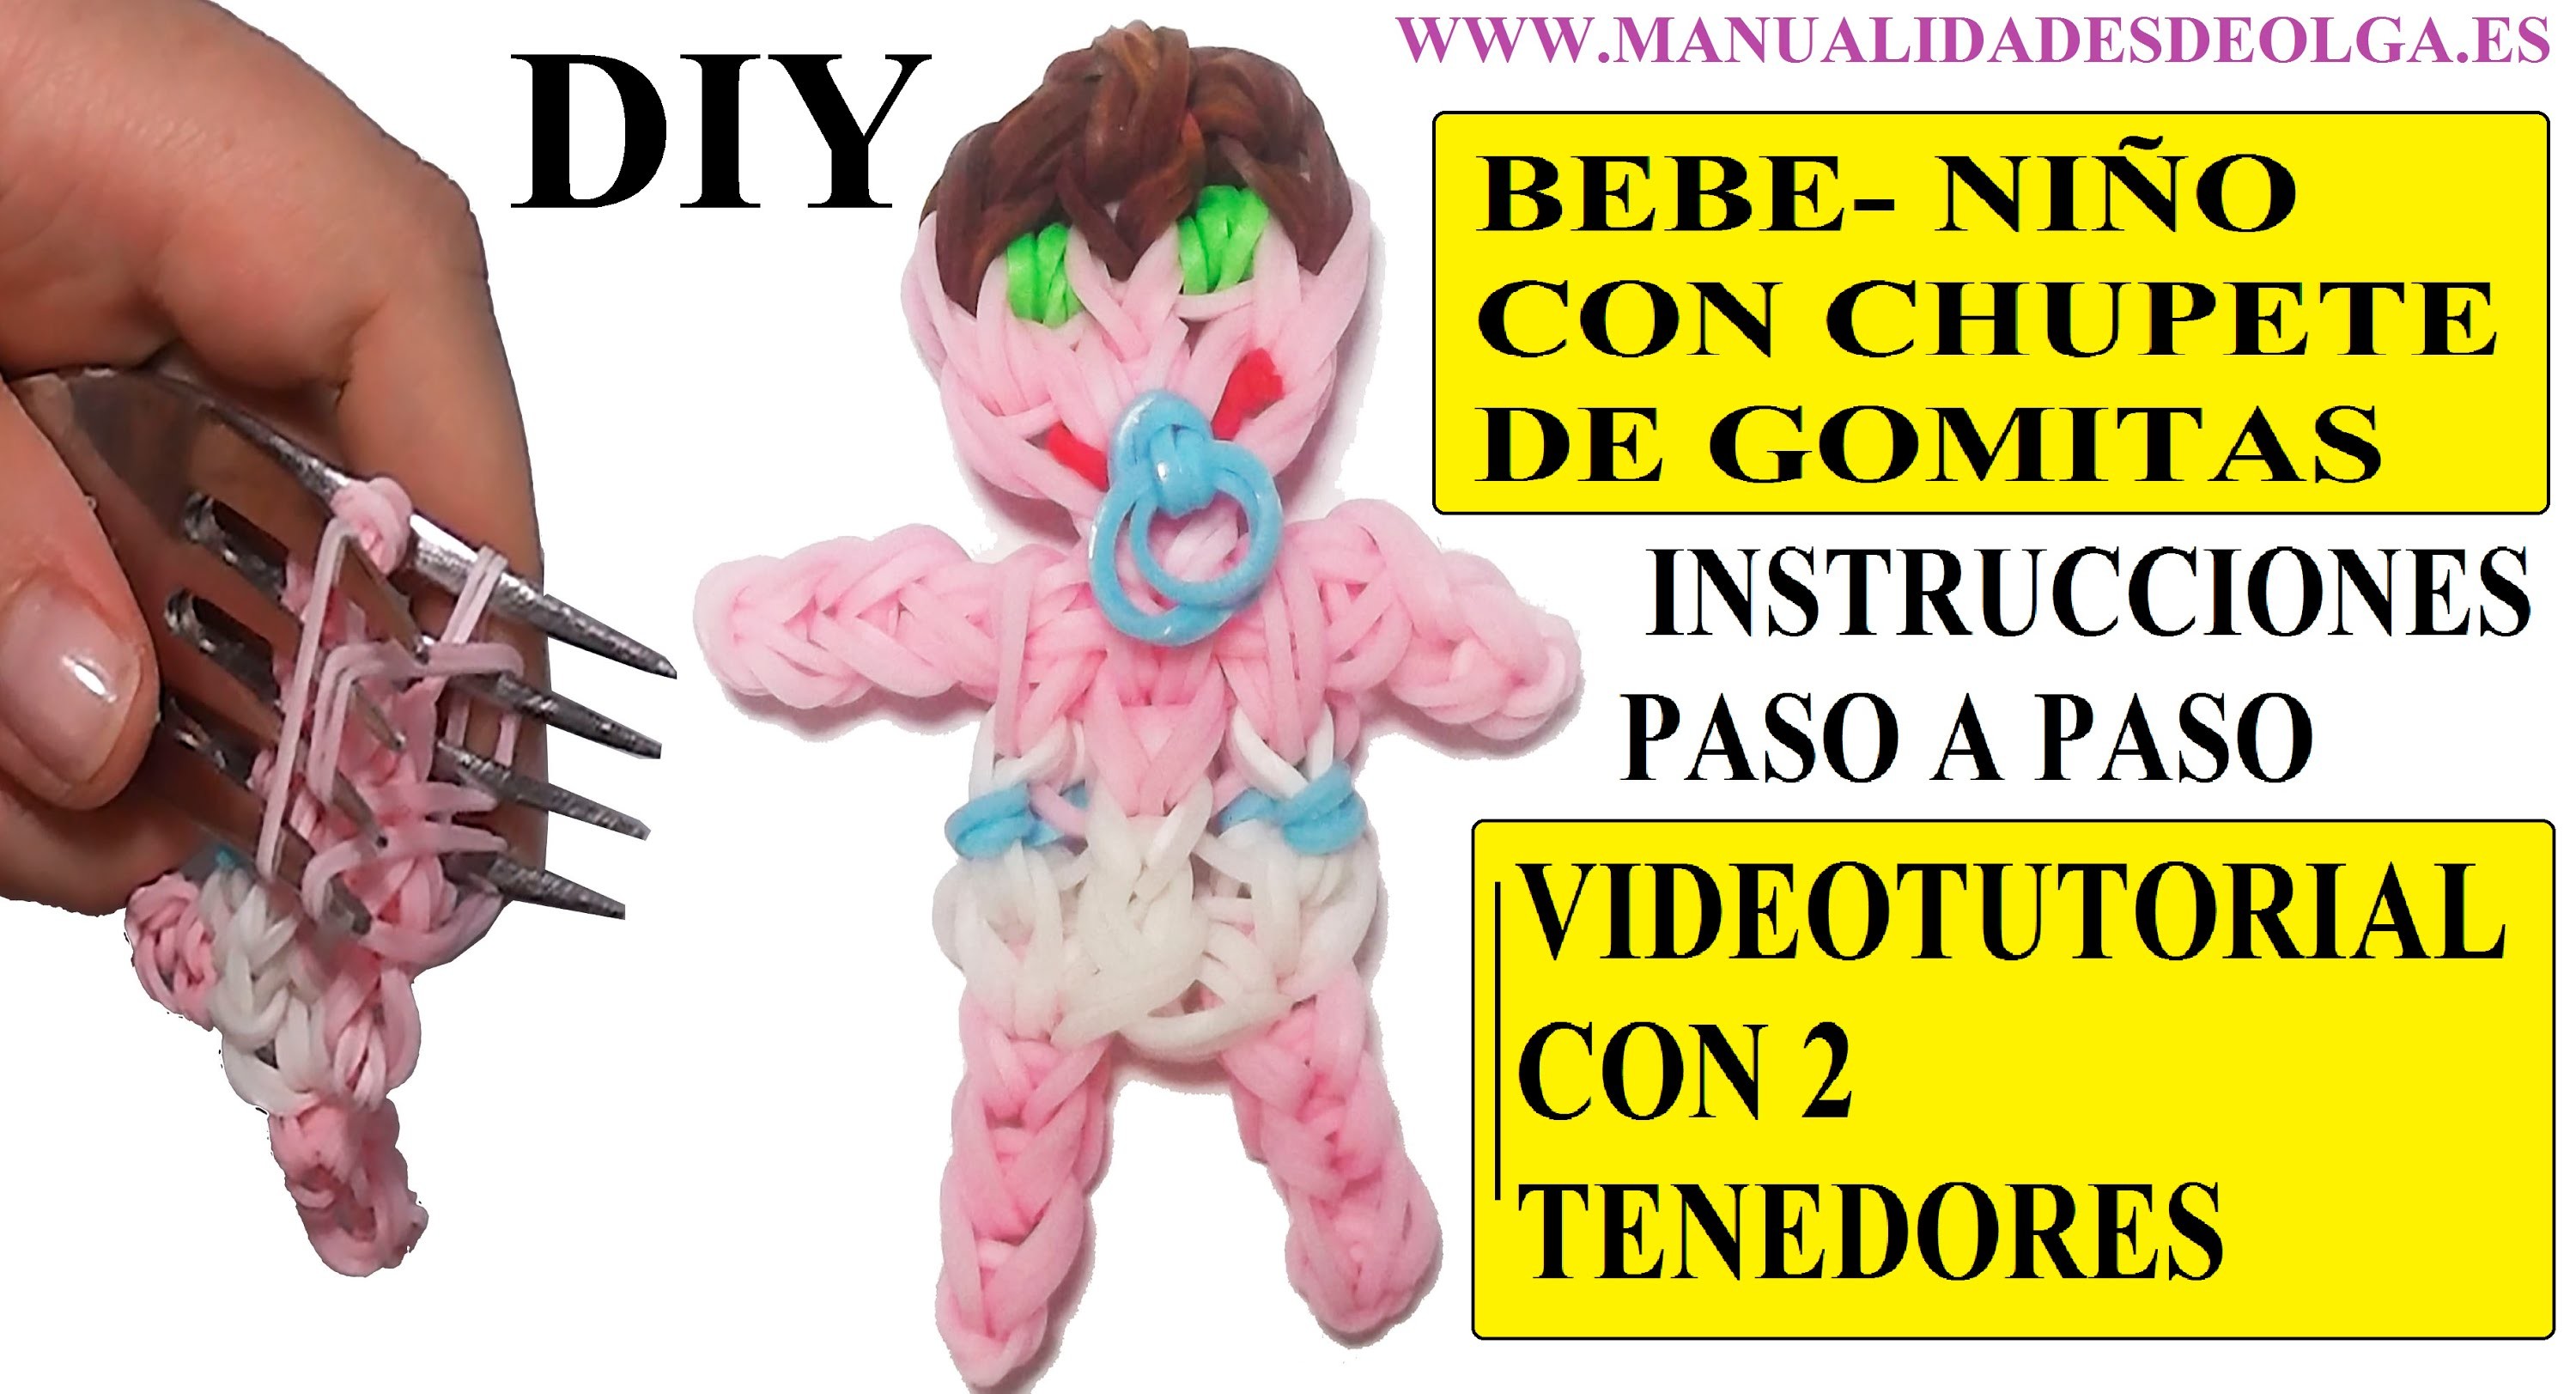 COMO HACER UN BEBE NIÑO DE GOMITAS CON CHUPETE (BABY BOY CHARM) CON DOS TENEDORES. TUTORIAL DIY